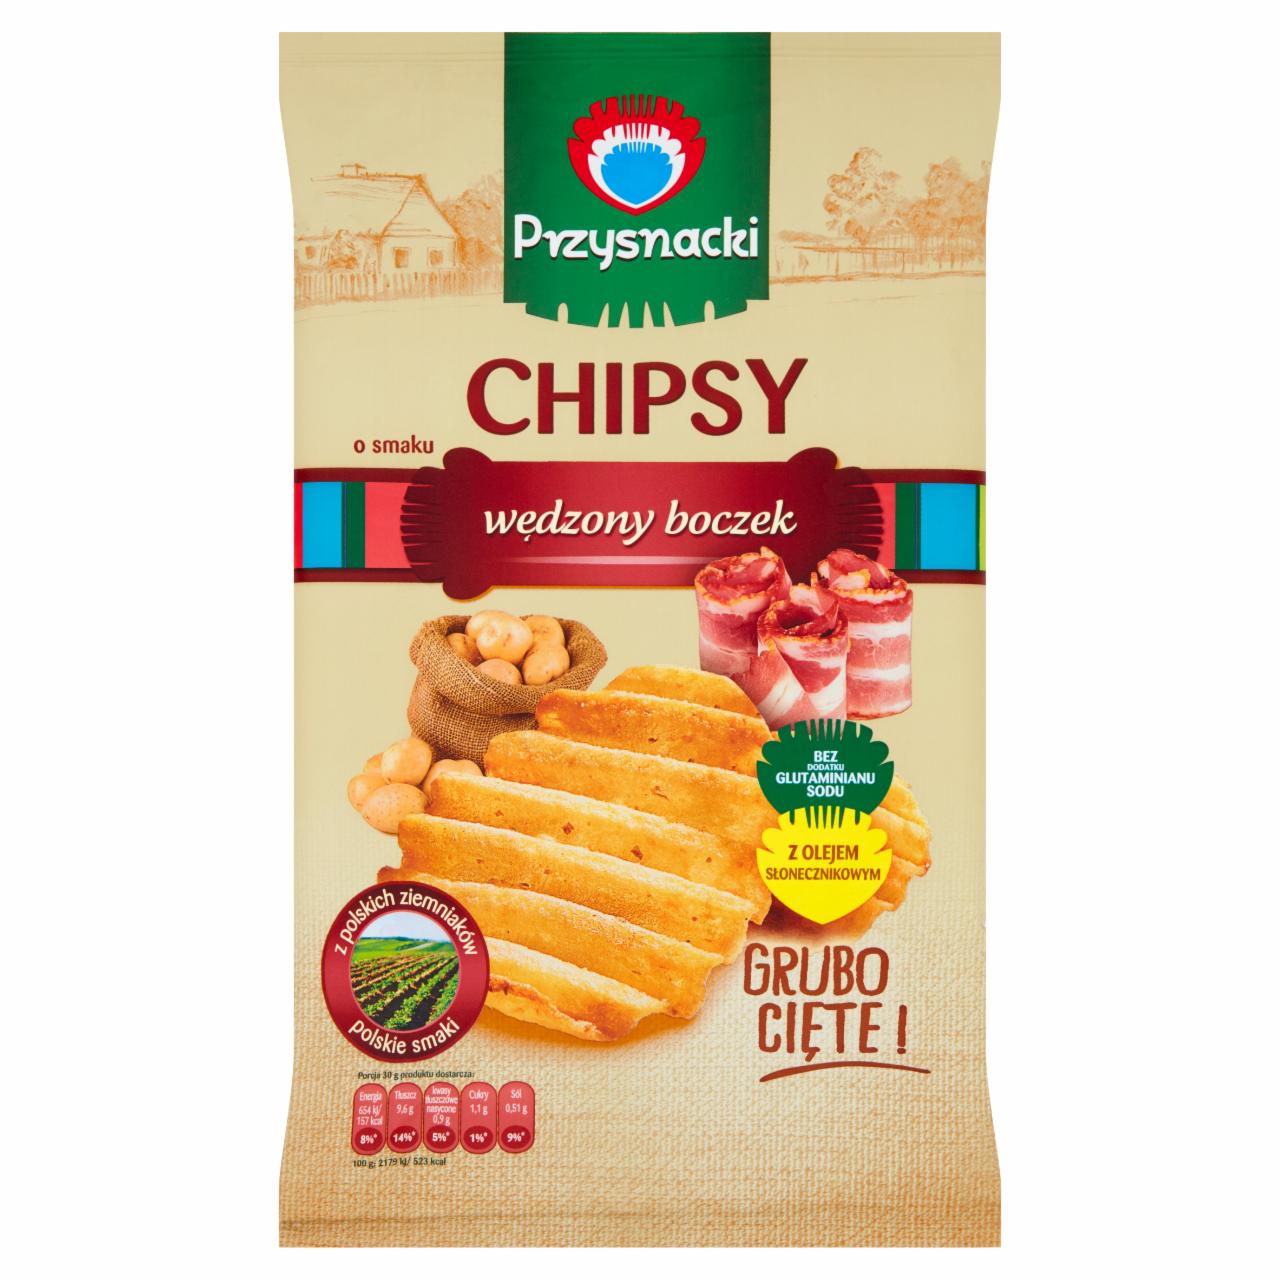 Zdjęcia - Przysnacki Chipsy o smaku wędzony boczek 135 g